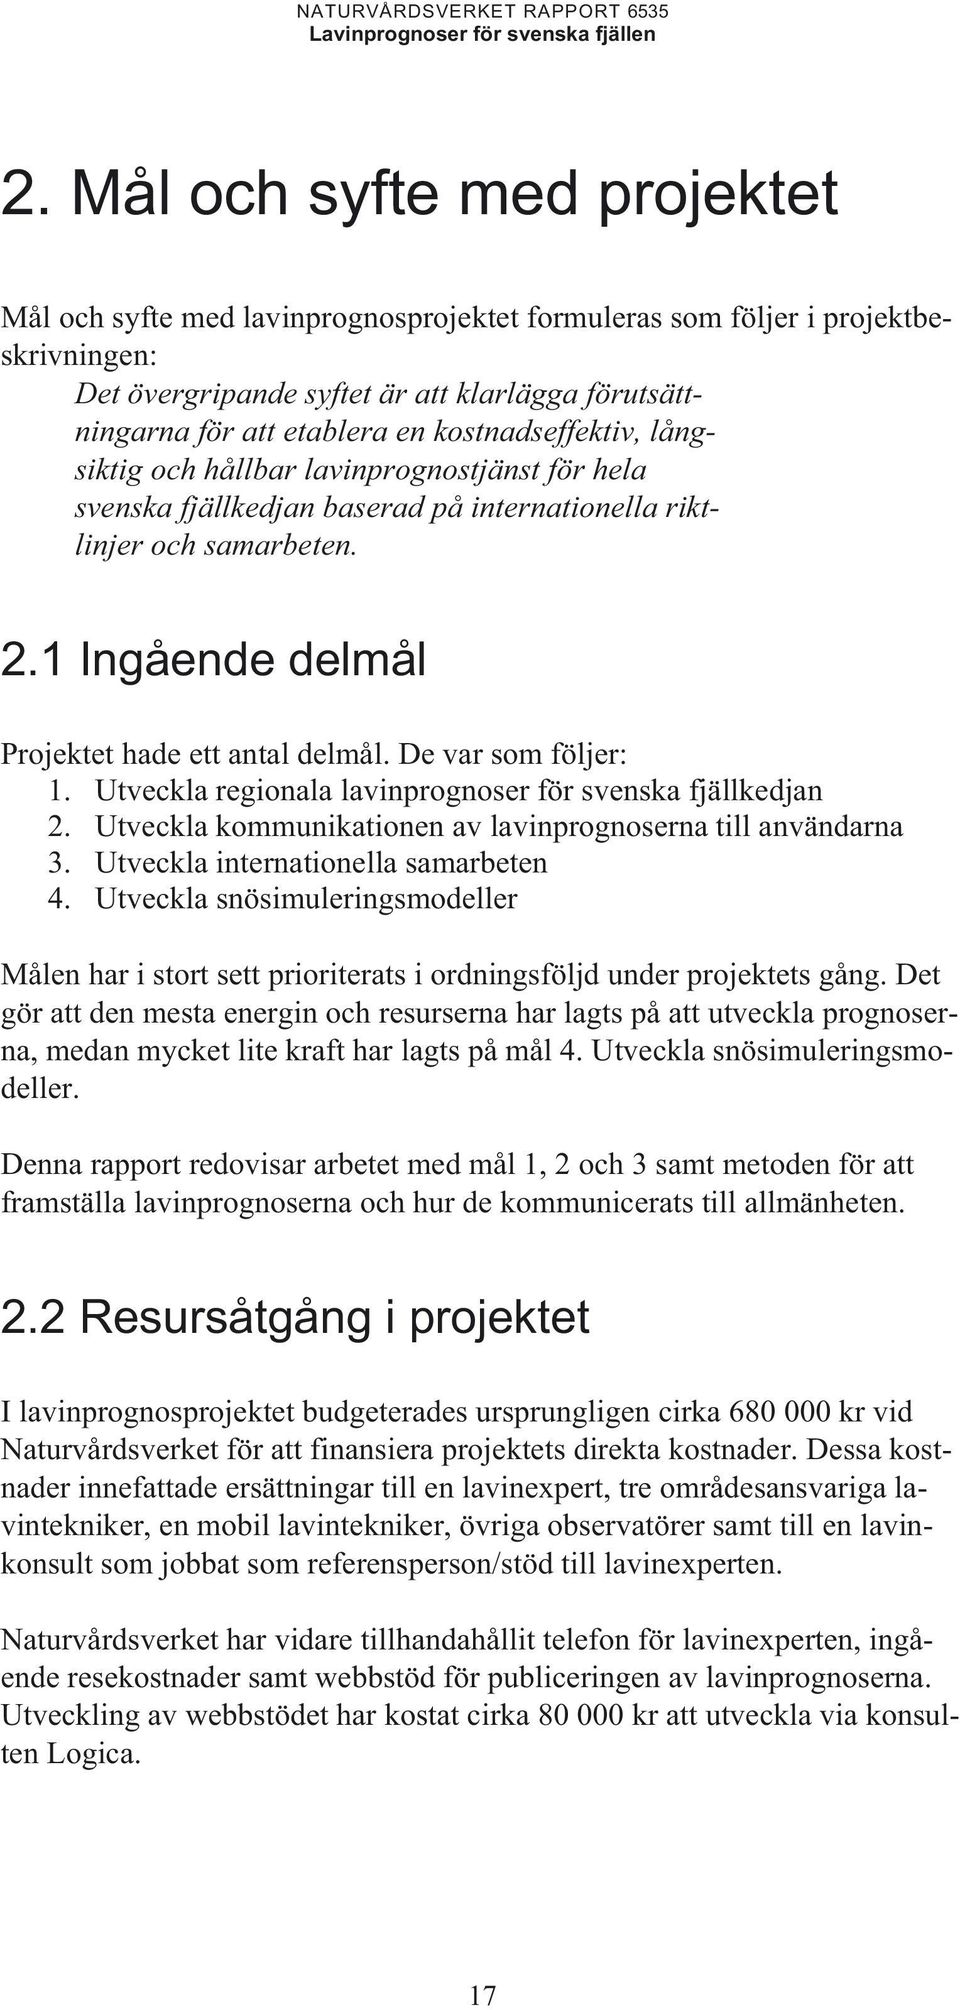 De var som följer: 1. Utveckla regionala lavinprognoser för svenska fjällkedjan 2. Utveckla kommunikationen av lavinprognoserna till användarna 3. Utveckla internationella samarbeten 4.